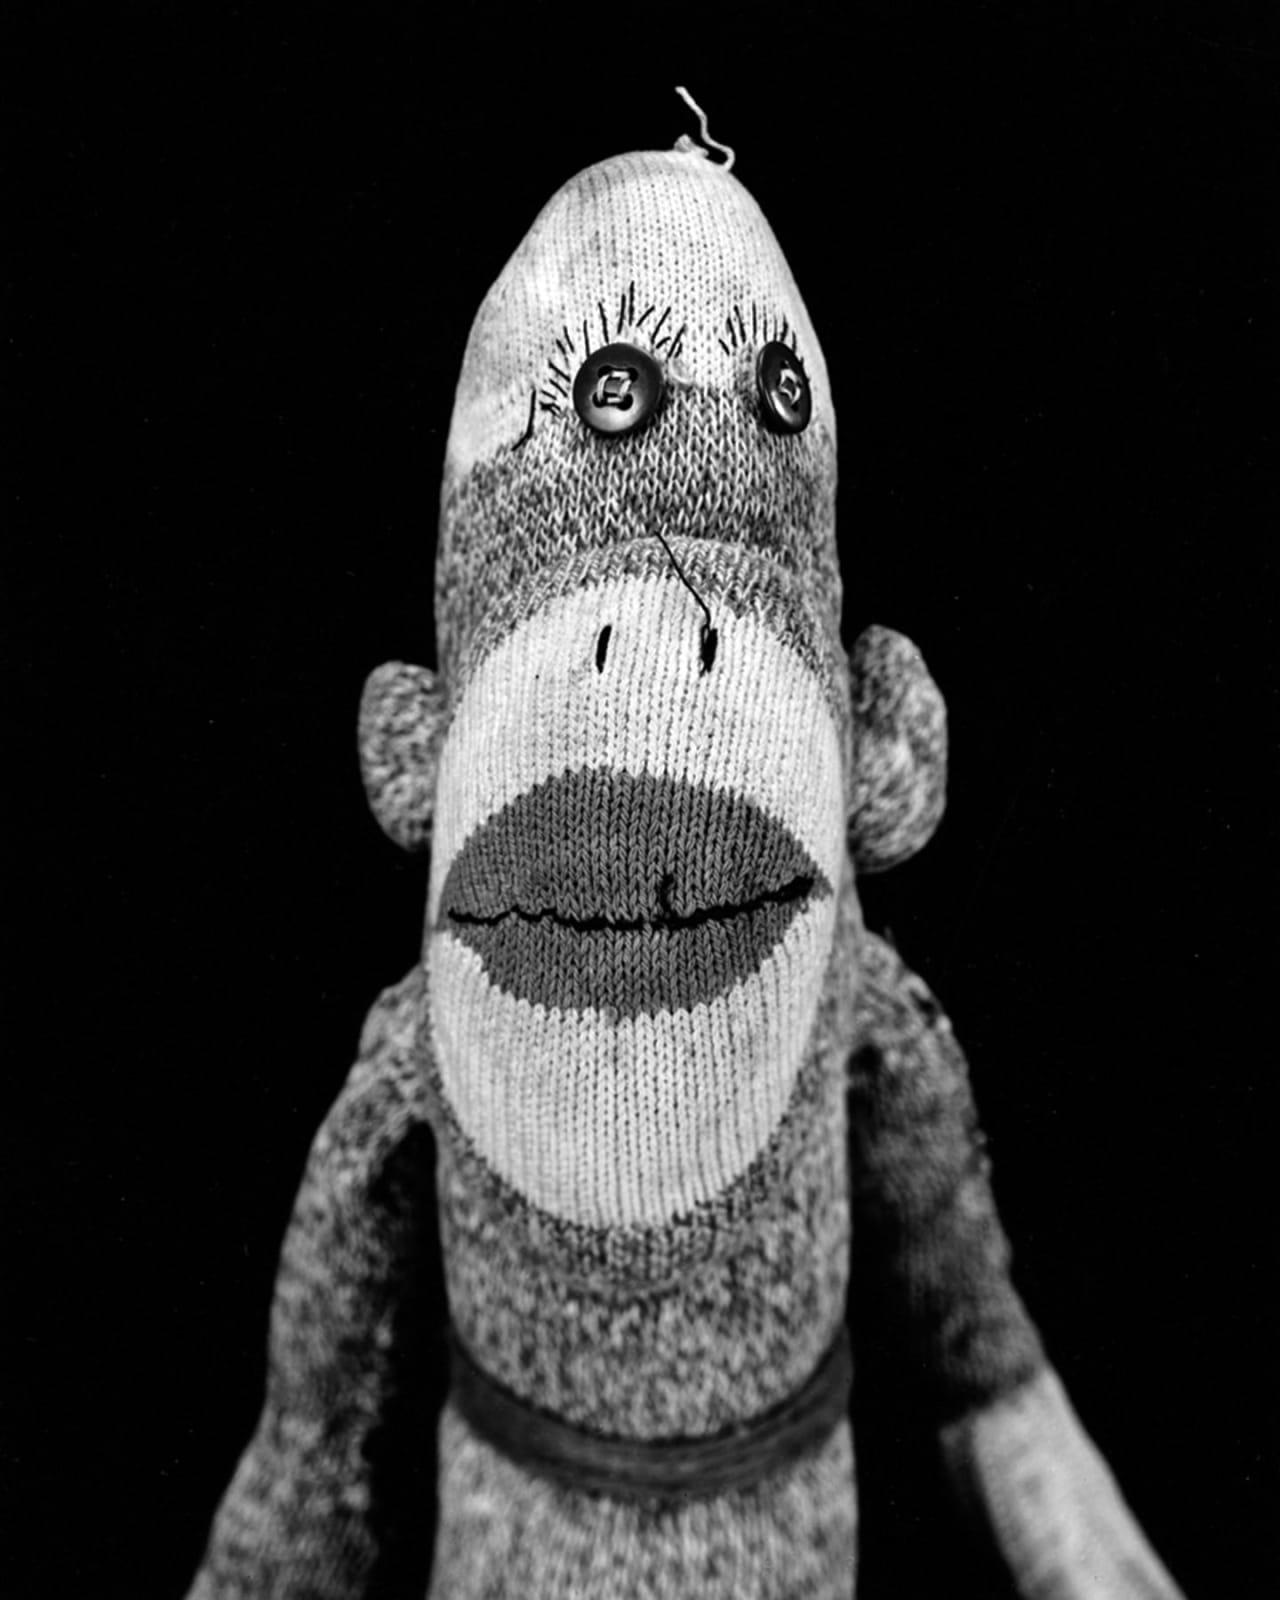 Arne Svenson, Sock Monkey 7, 2002